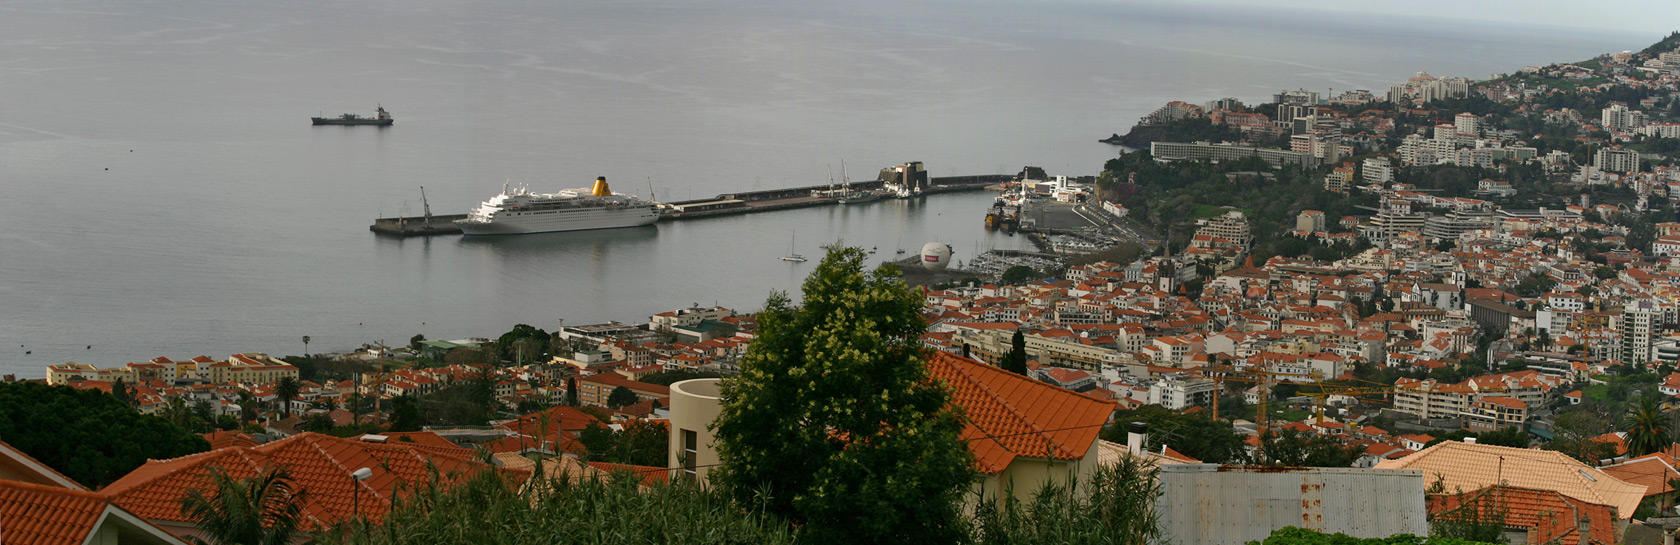 Funchal,harbour